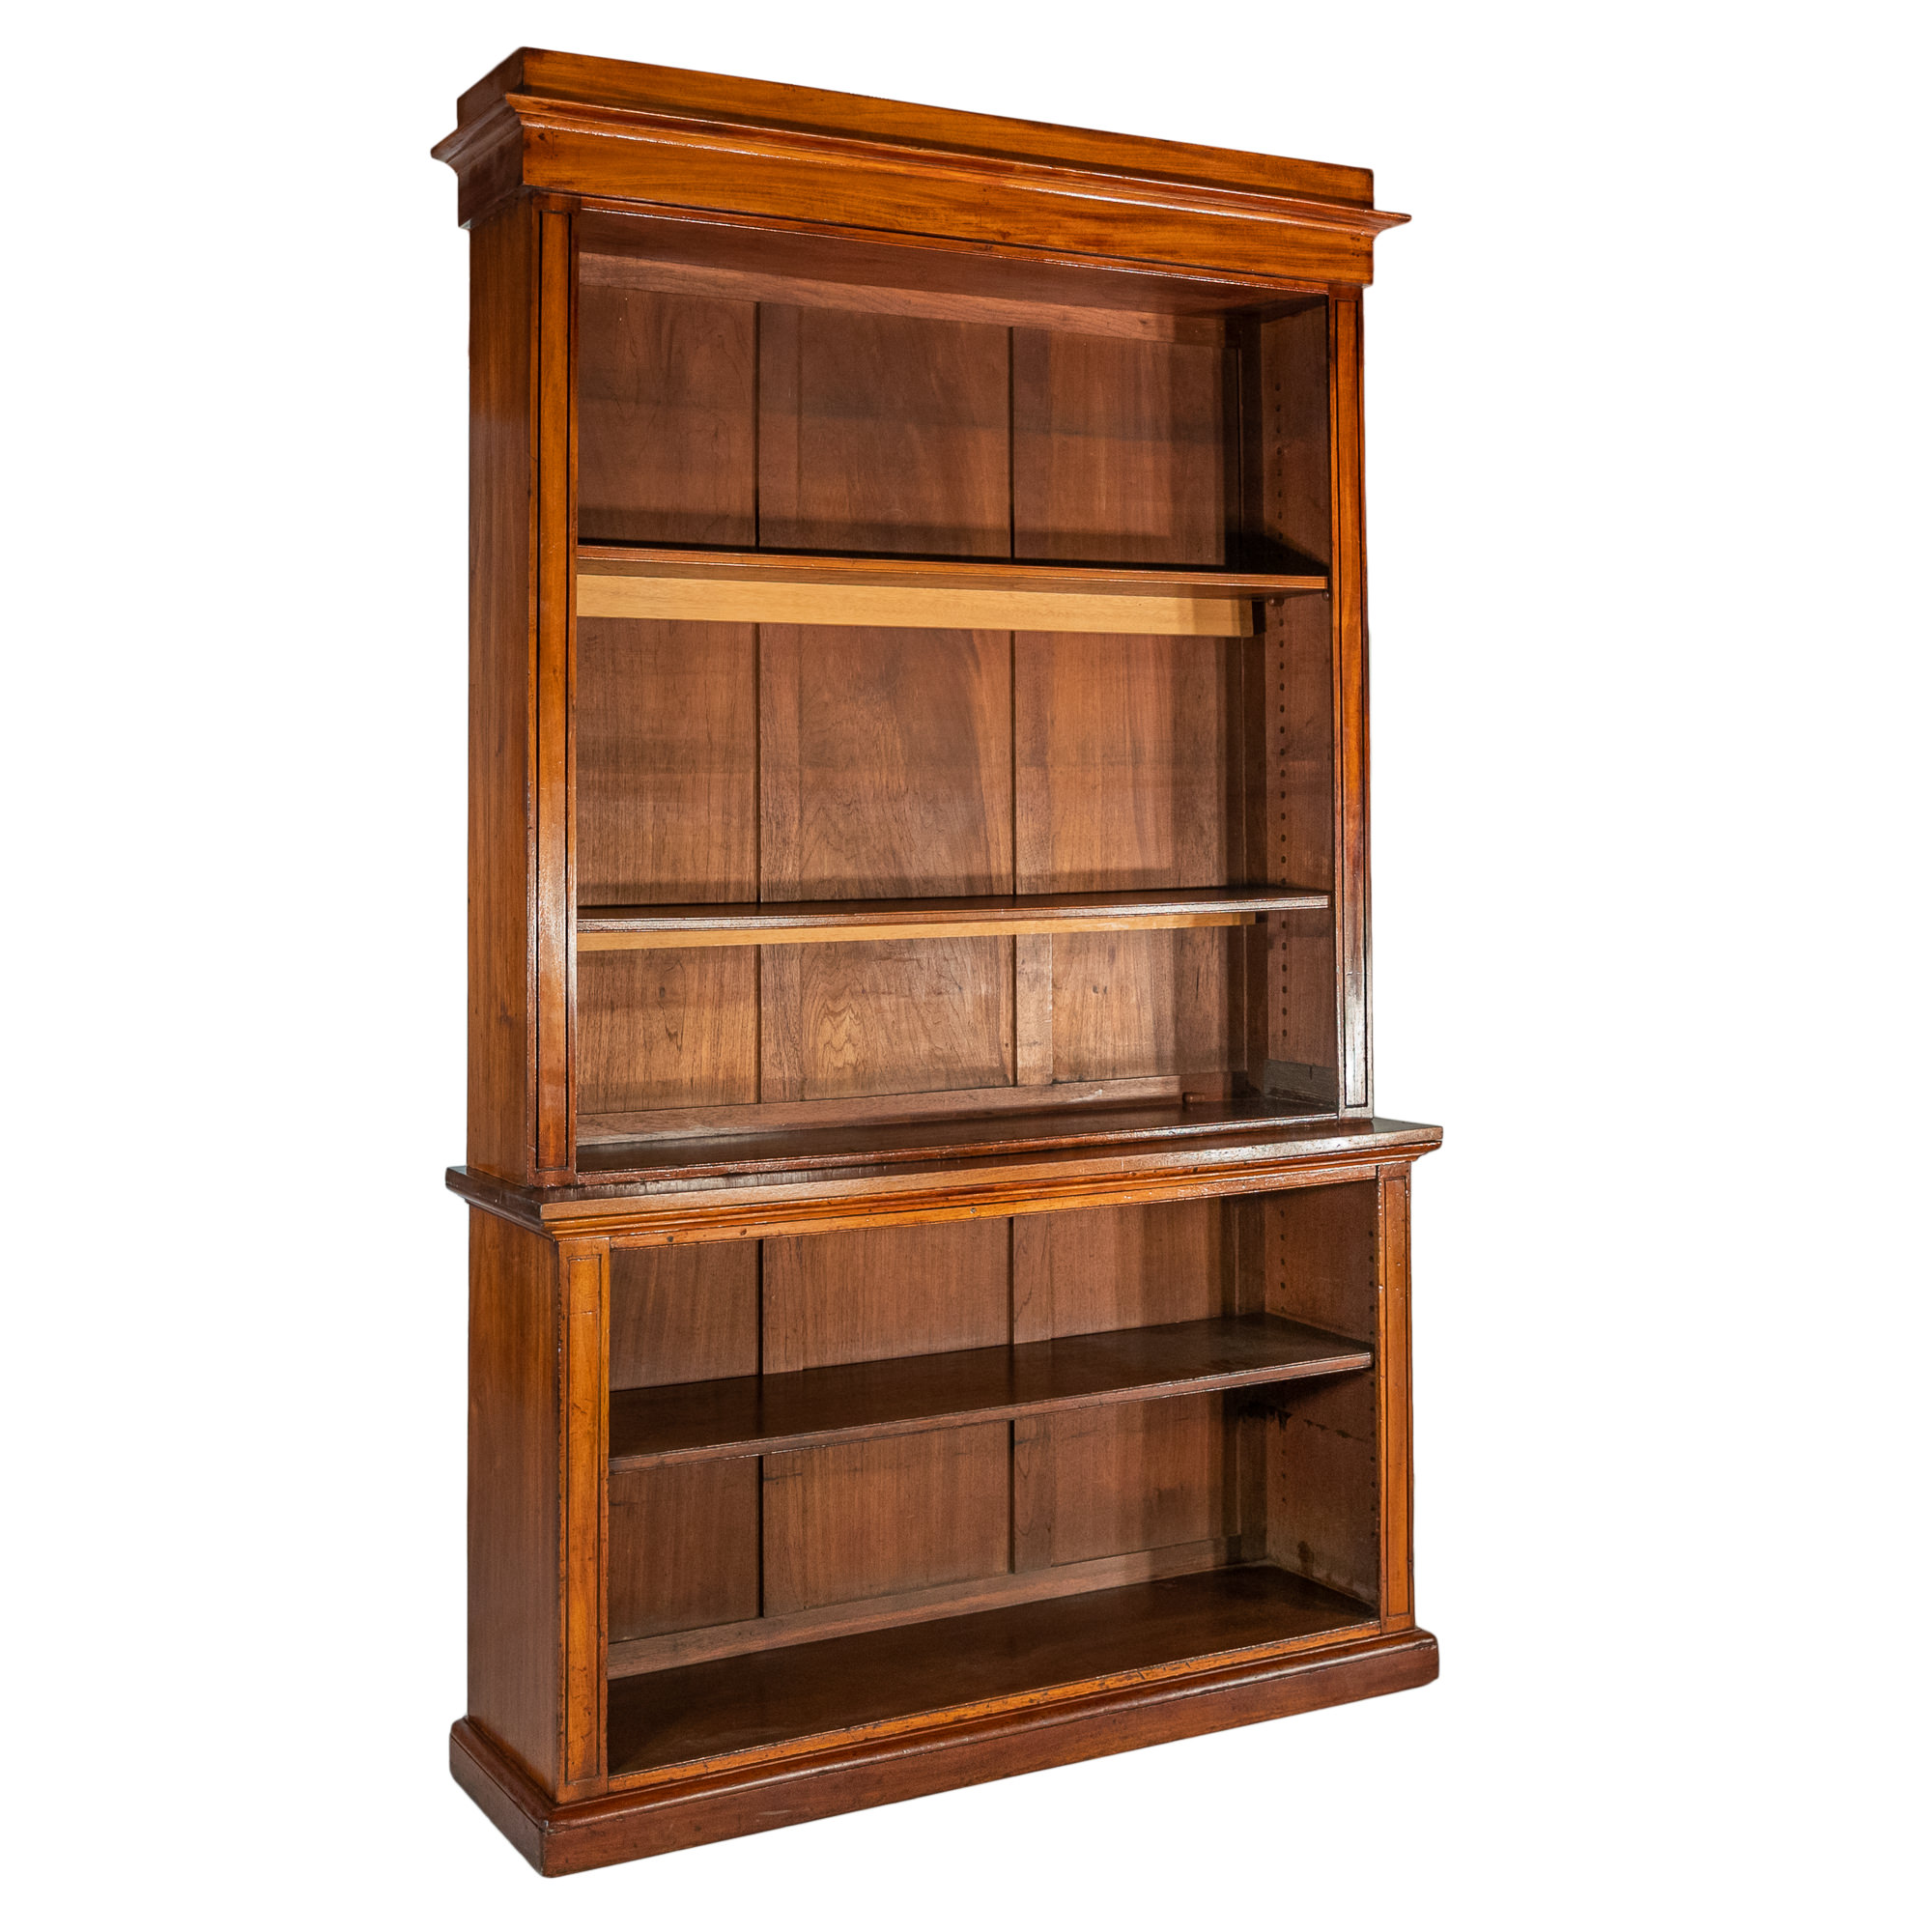 'Early Australian Cedar Open Bookcase of Tall Proportions Circa 1850'